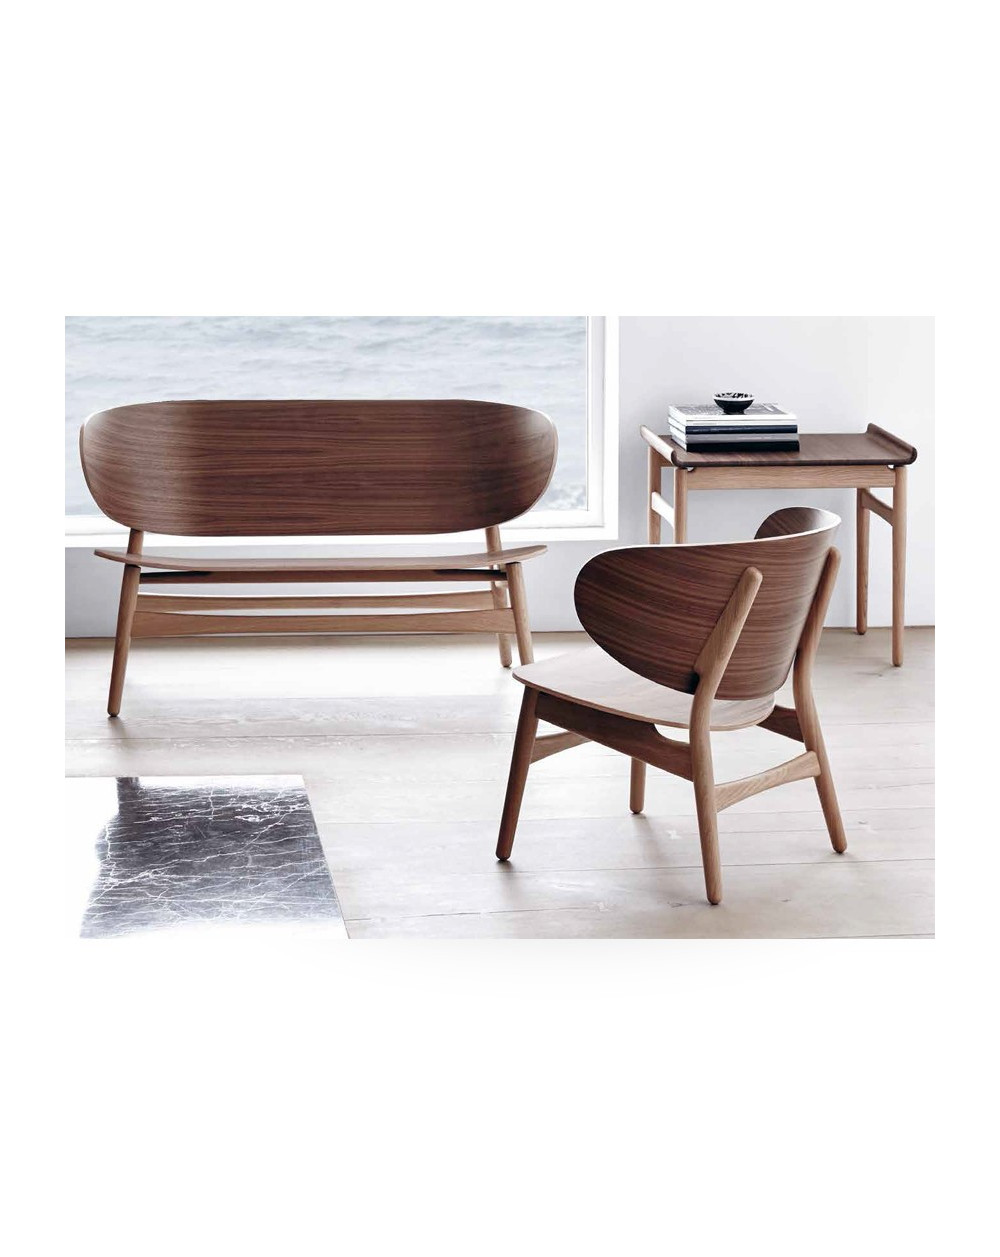 Venus chair, Hans J. Wegner design  for Getama